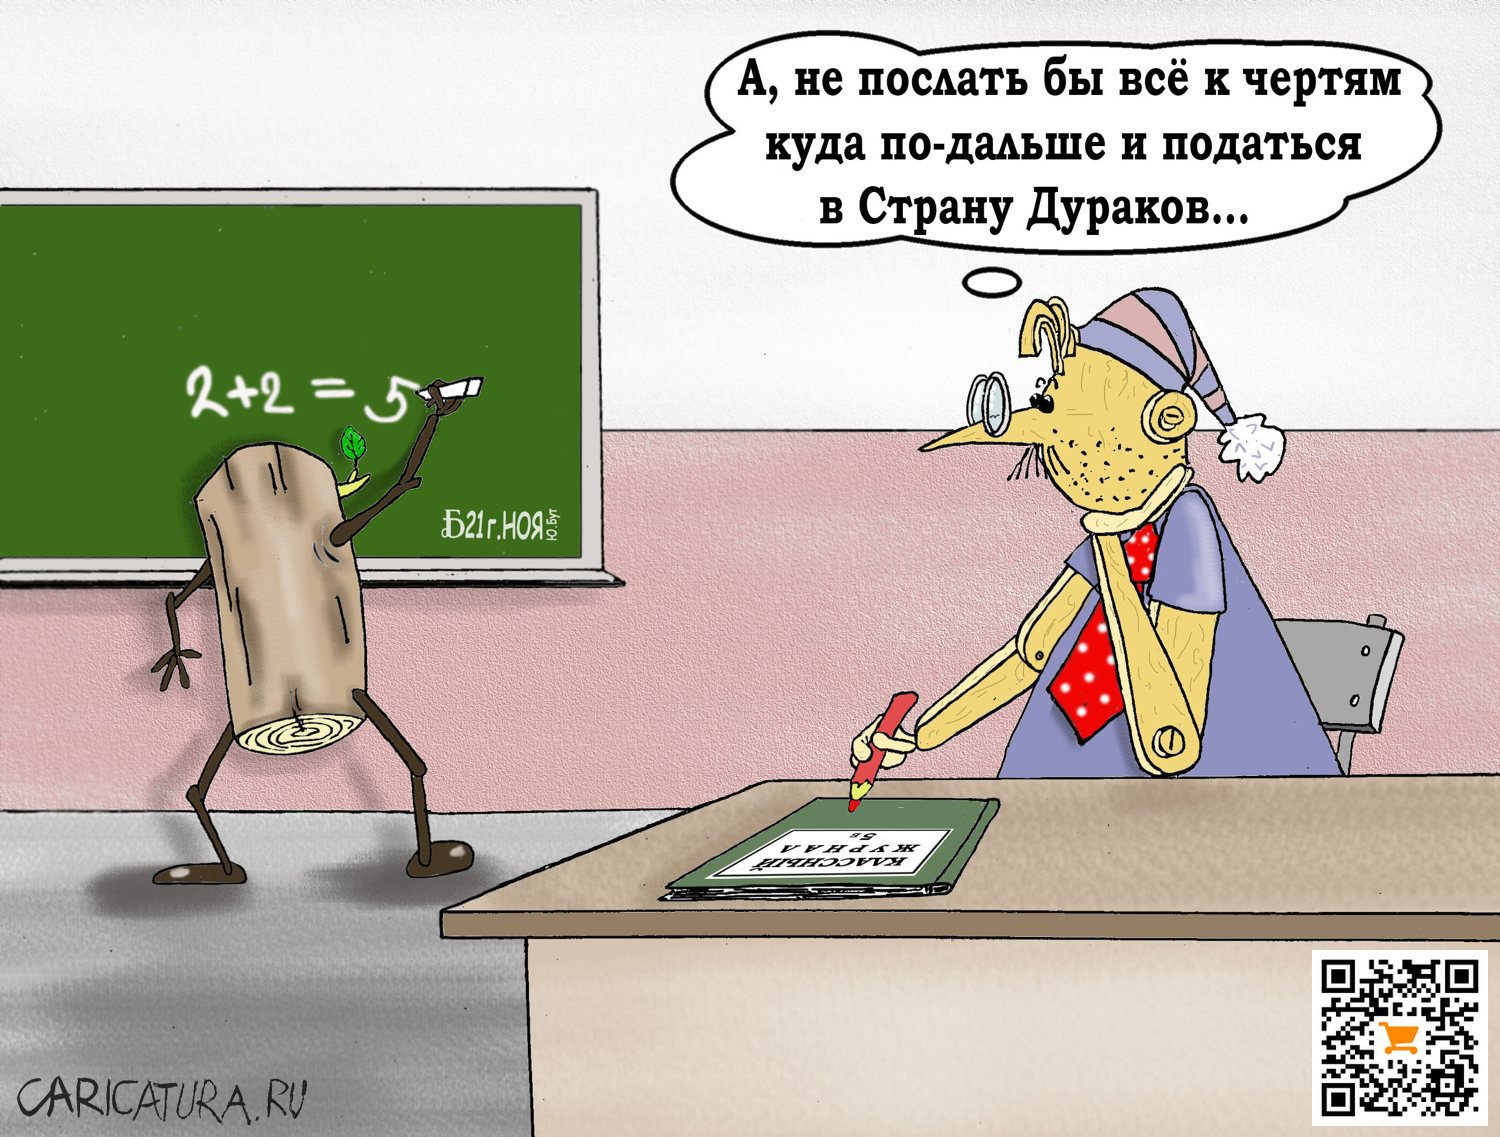 Карикатура "ПроОпытСын ошибок трутных", Борис Демин